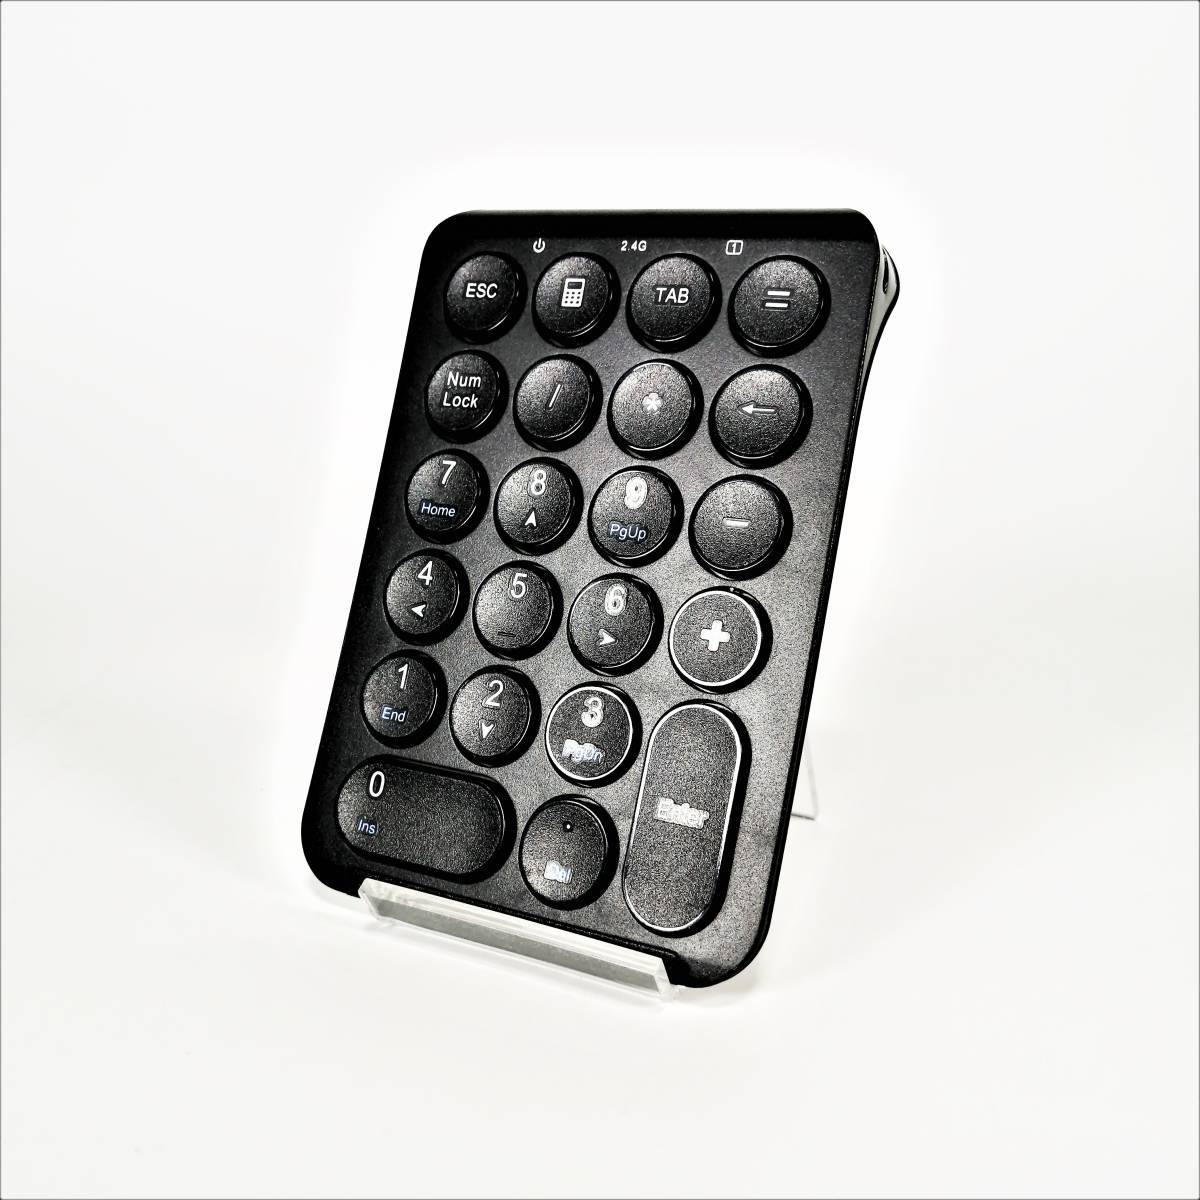 美品 iClever IC-KP09 ブラック テンキー 2.4G Tab付き 薄型 type-C充電式 丸いキー設計 持ち運び便利 ノートブック用【USED品】 22 00481_画像2